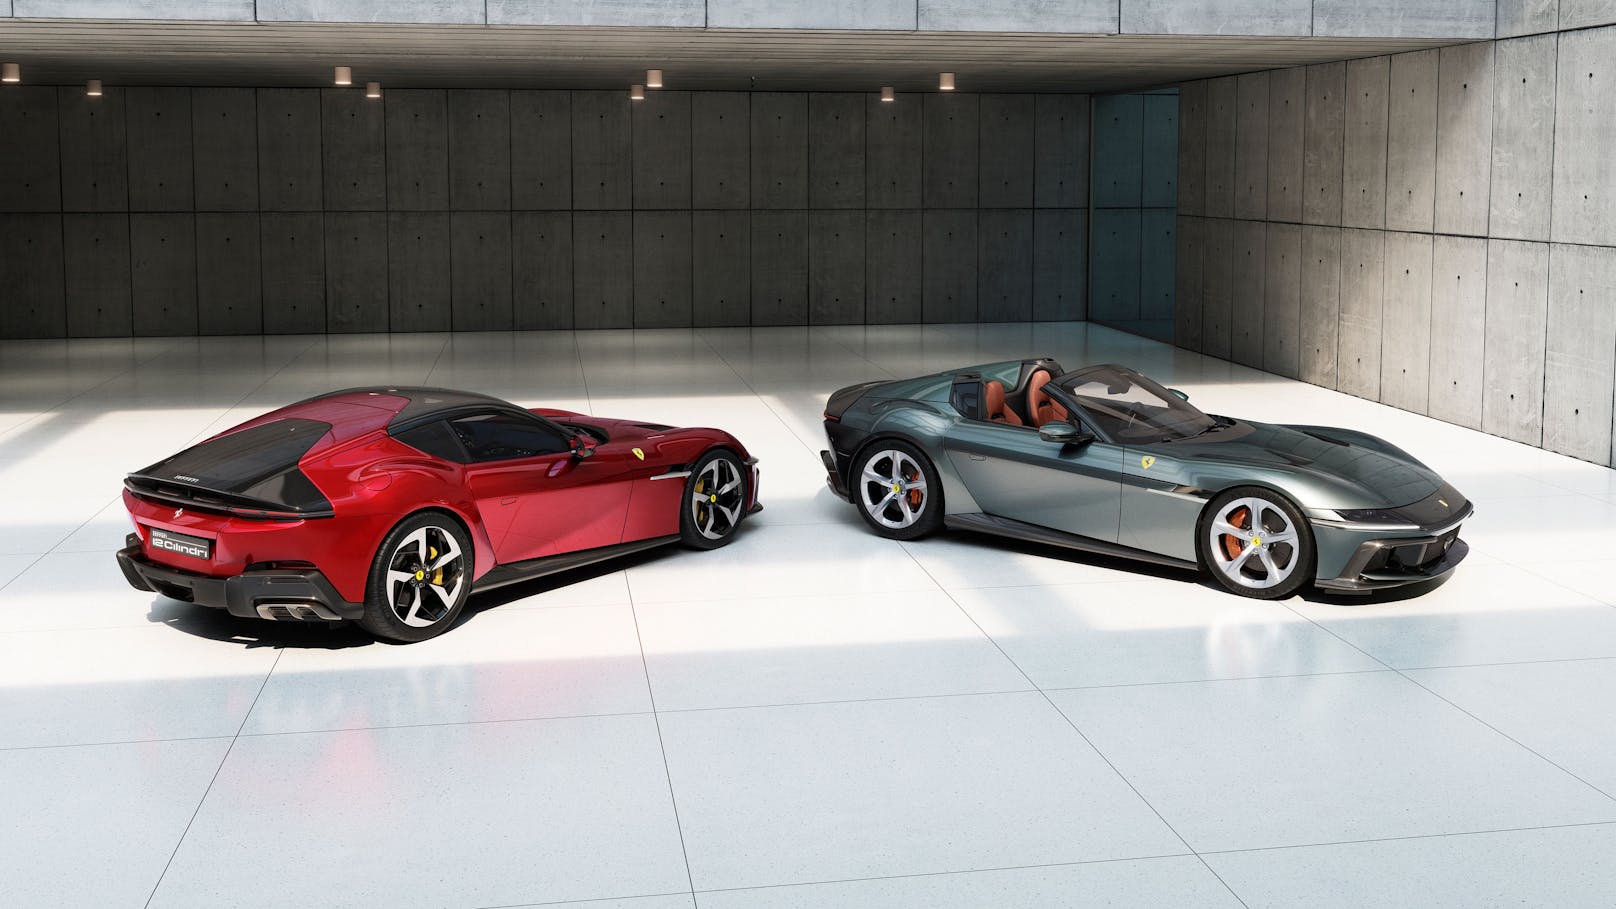 Der neue Gran Turismo hat – wohl zum letzten Mal – einen reinen V12-Verbrenner mit 830 PS unter der Haube. Unter dem Namen "12Cilindri" stellt Ferrari in Miami den Nachfolger des 812 Superfast vor.